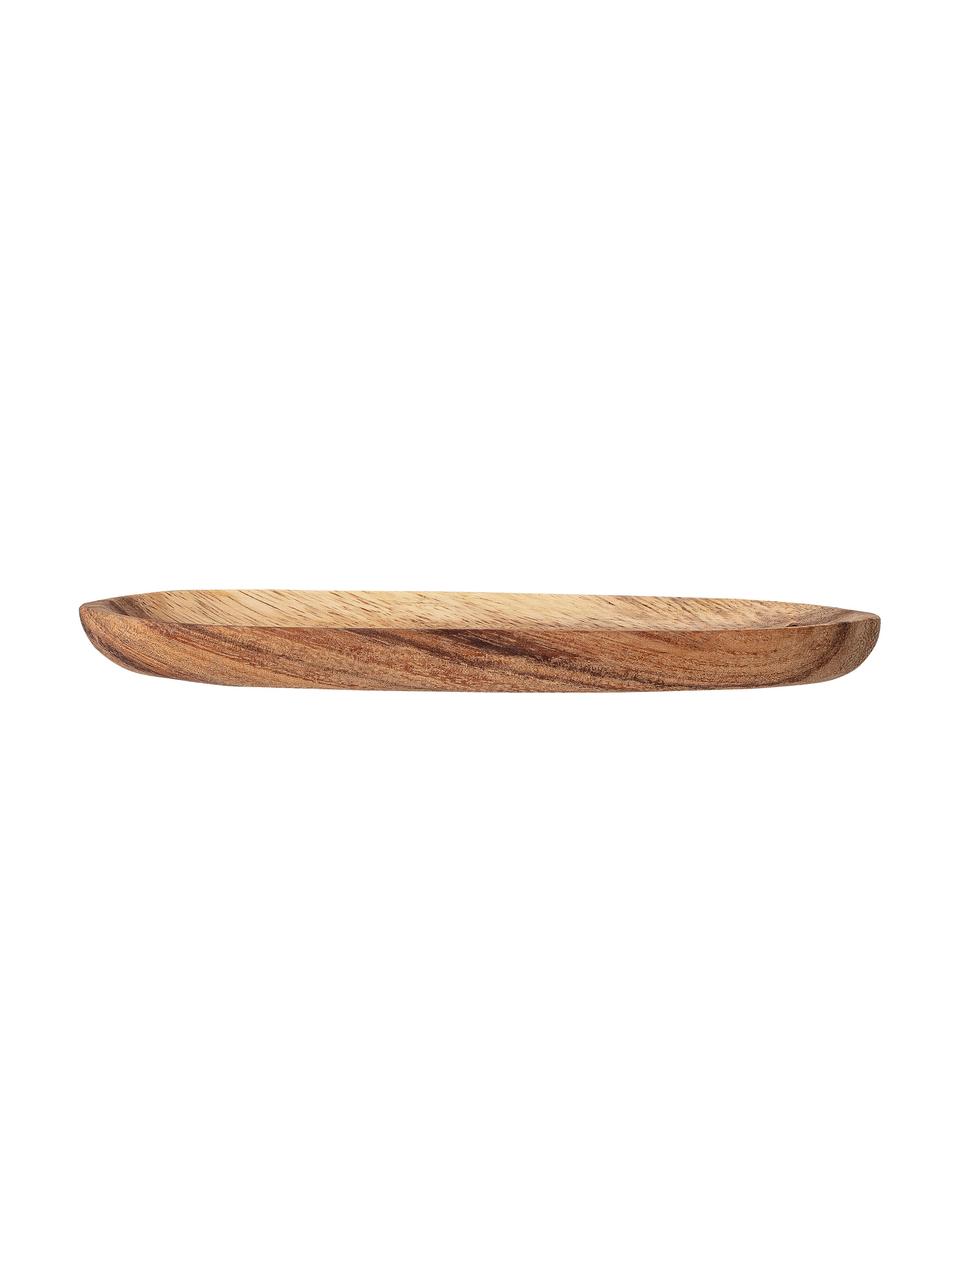 Fuente de madera de acacia Evely, Madera de acacia, Marrón, L 20 x An 5 cm